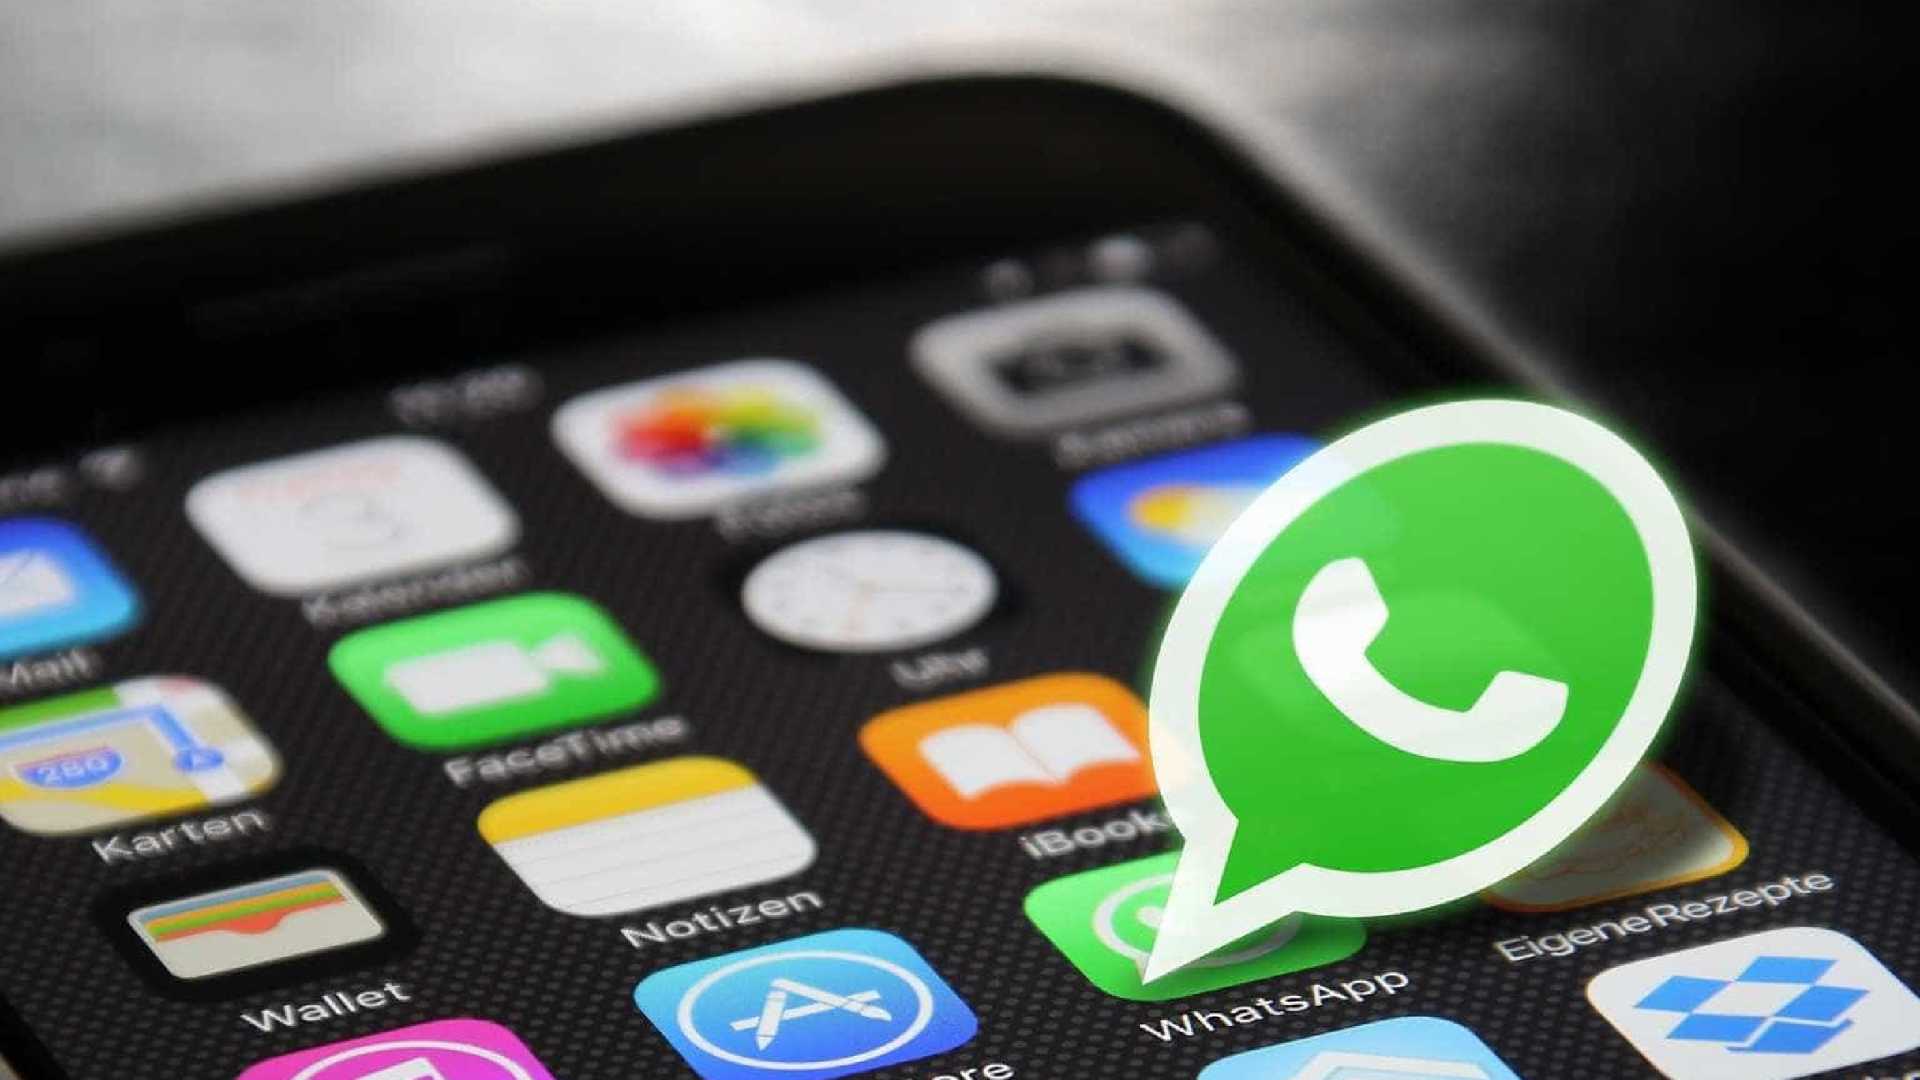 10 Dicas De Como Vender No Whatsapp E Aumentar Sua Cartela De Clientes 3432